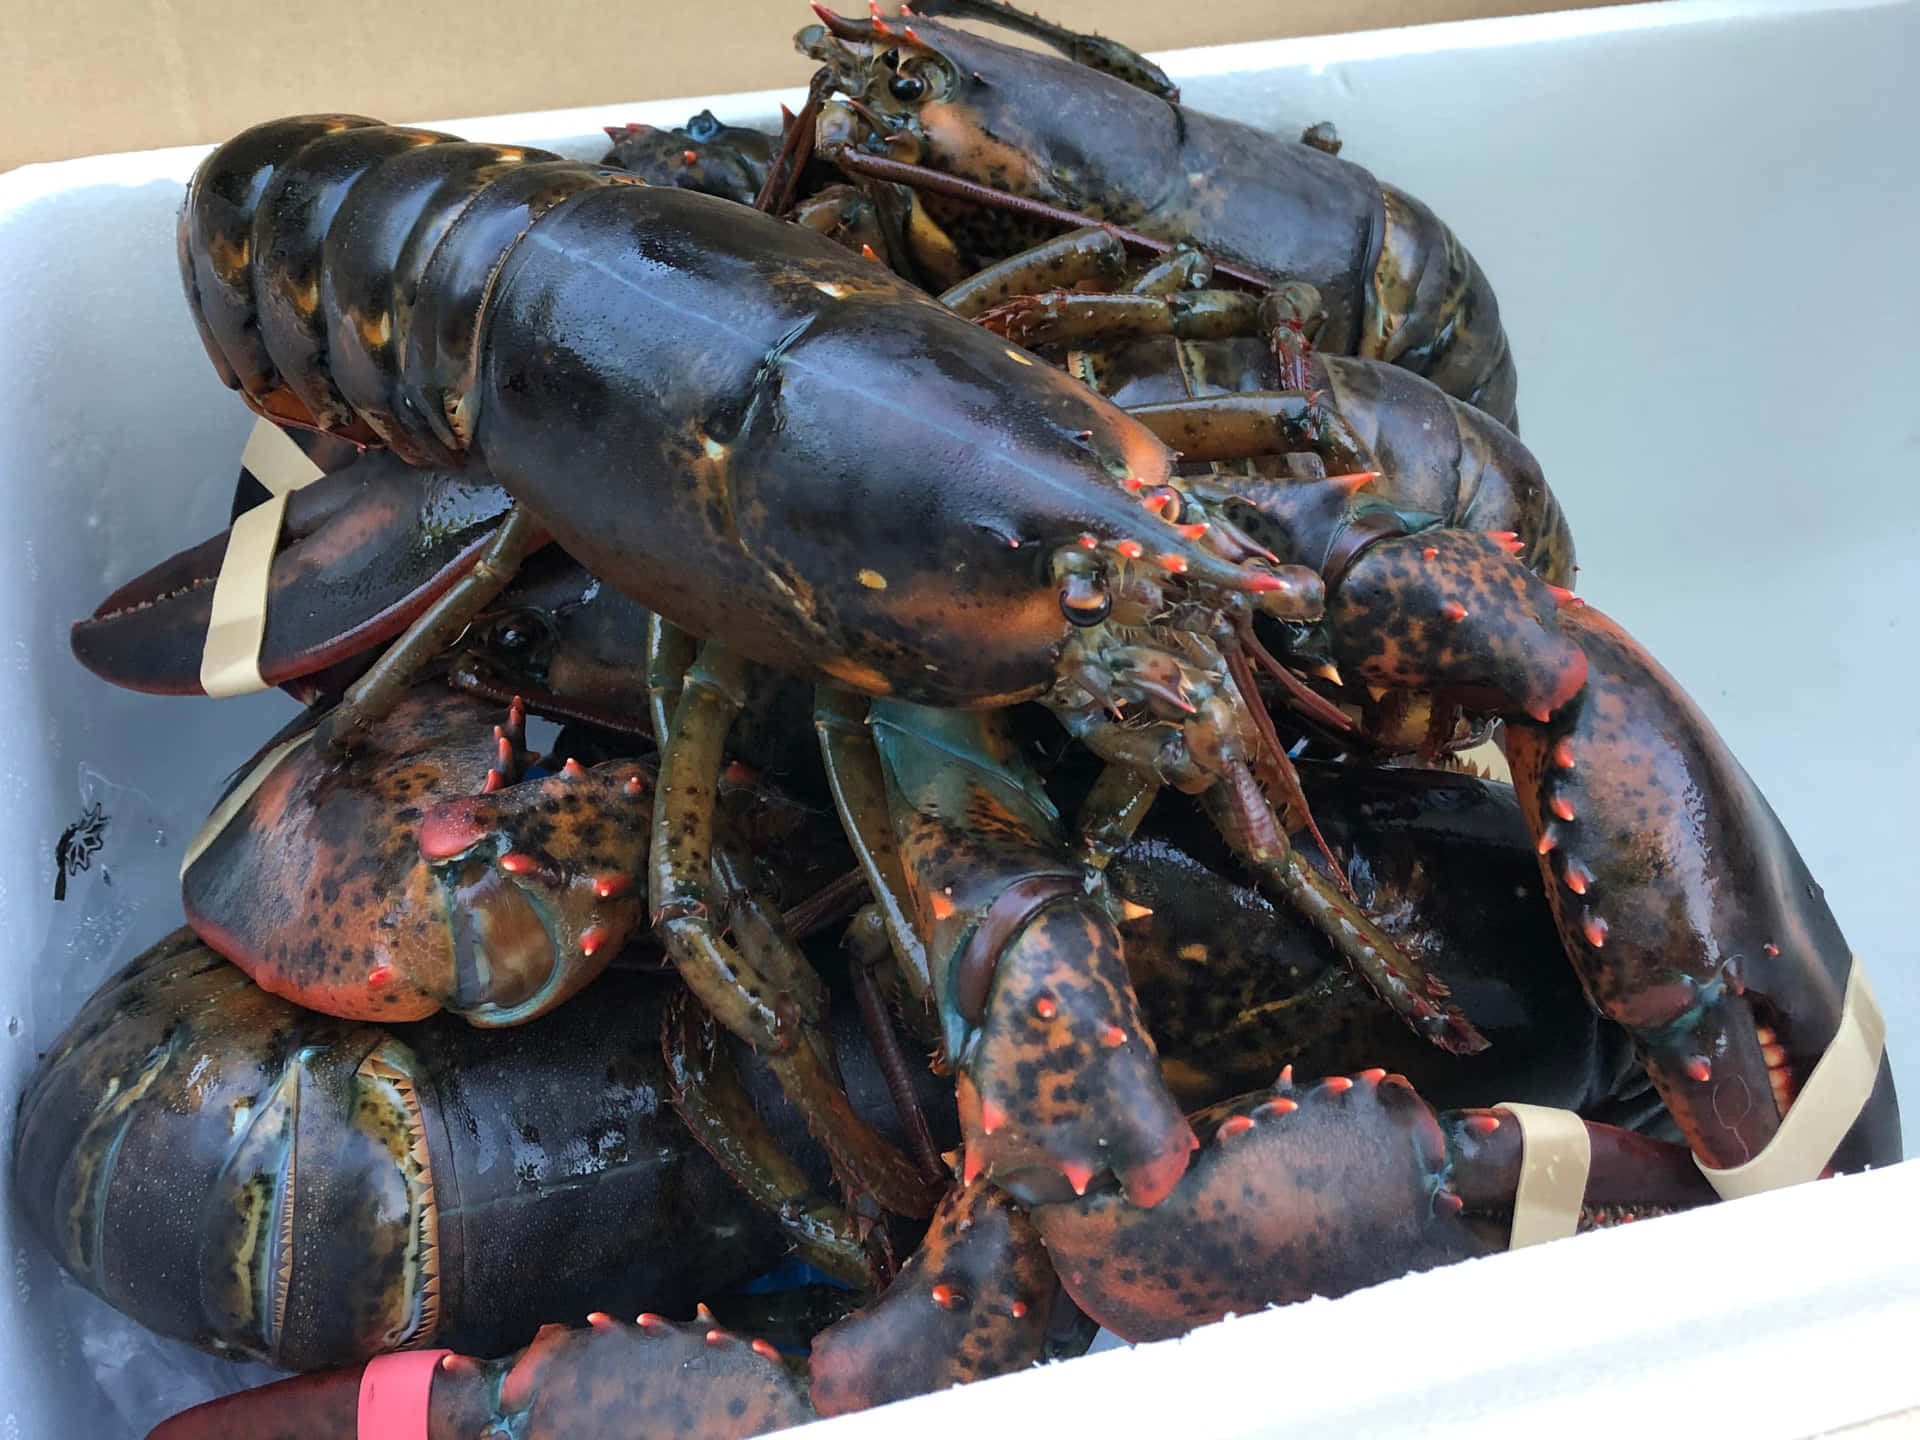 Fresh Lobster is always a Treat!